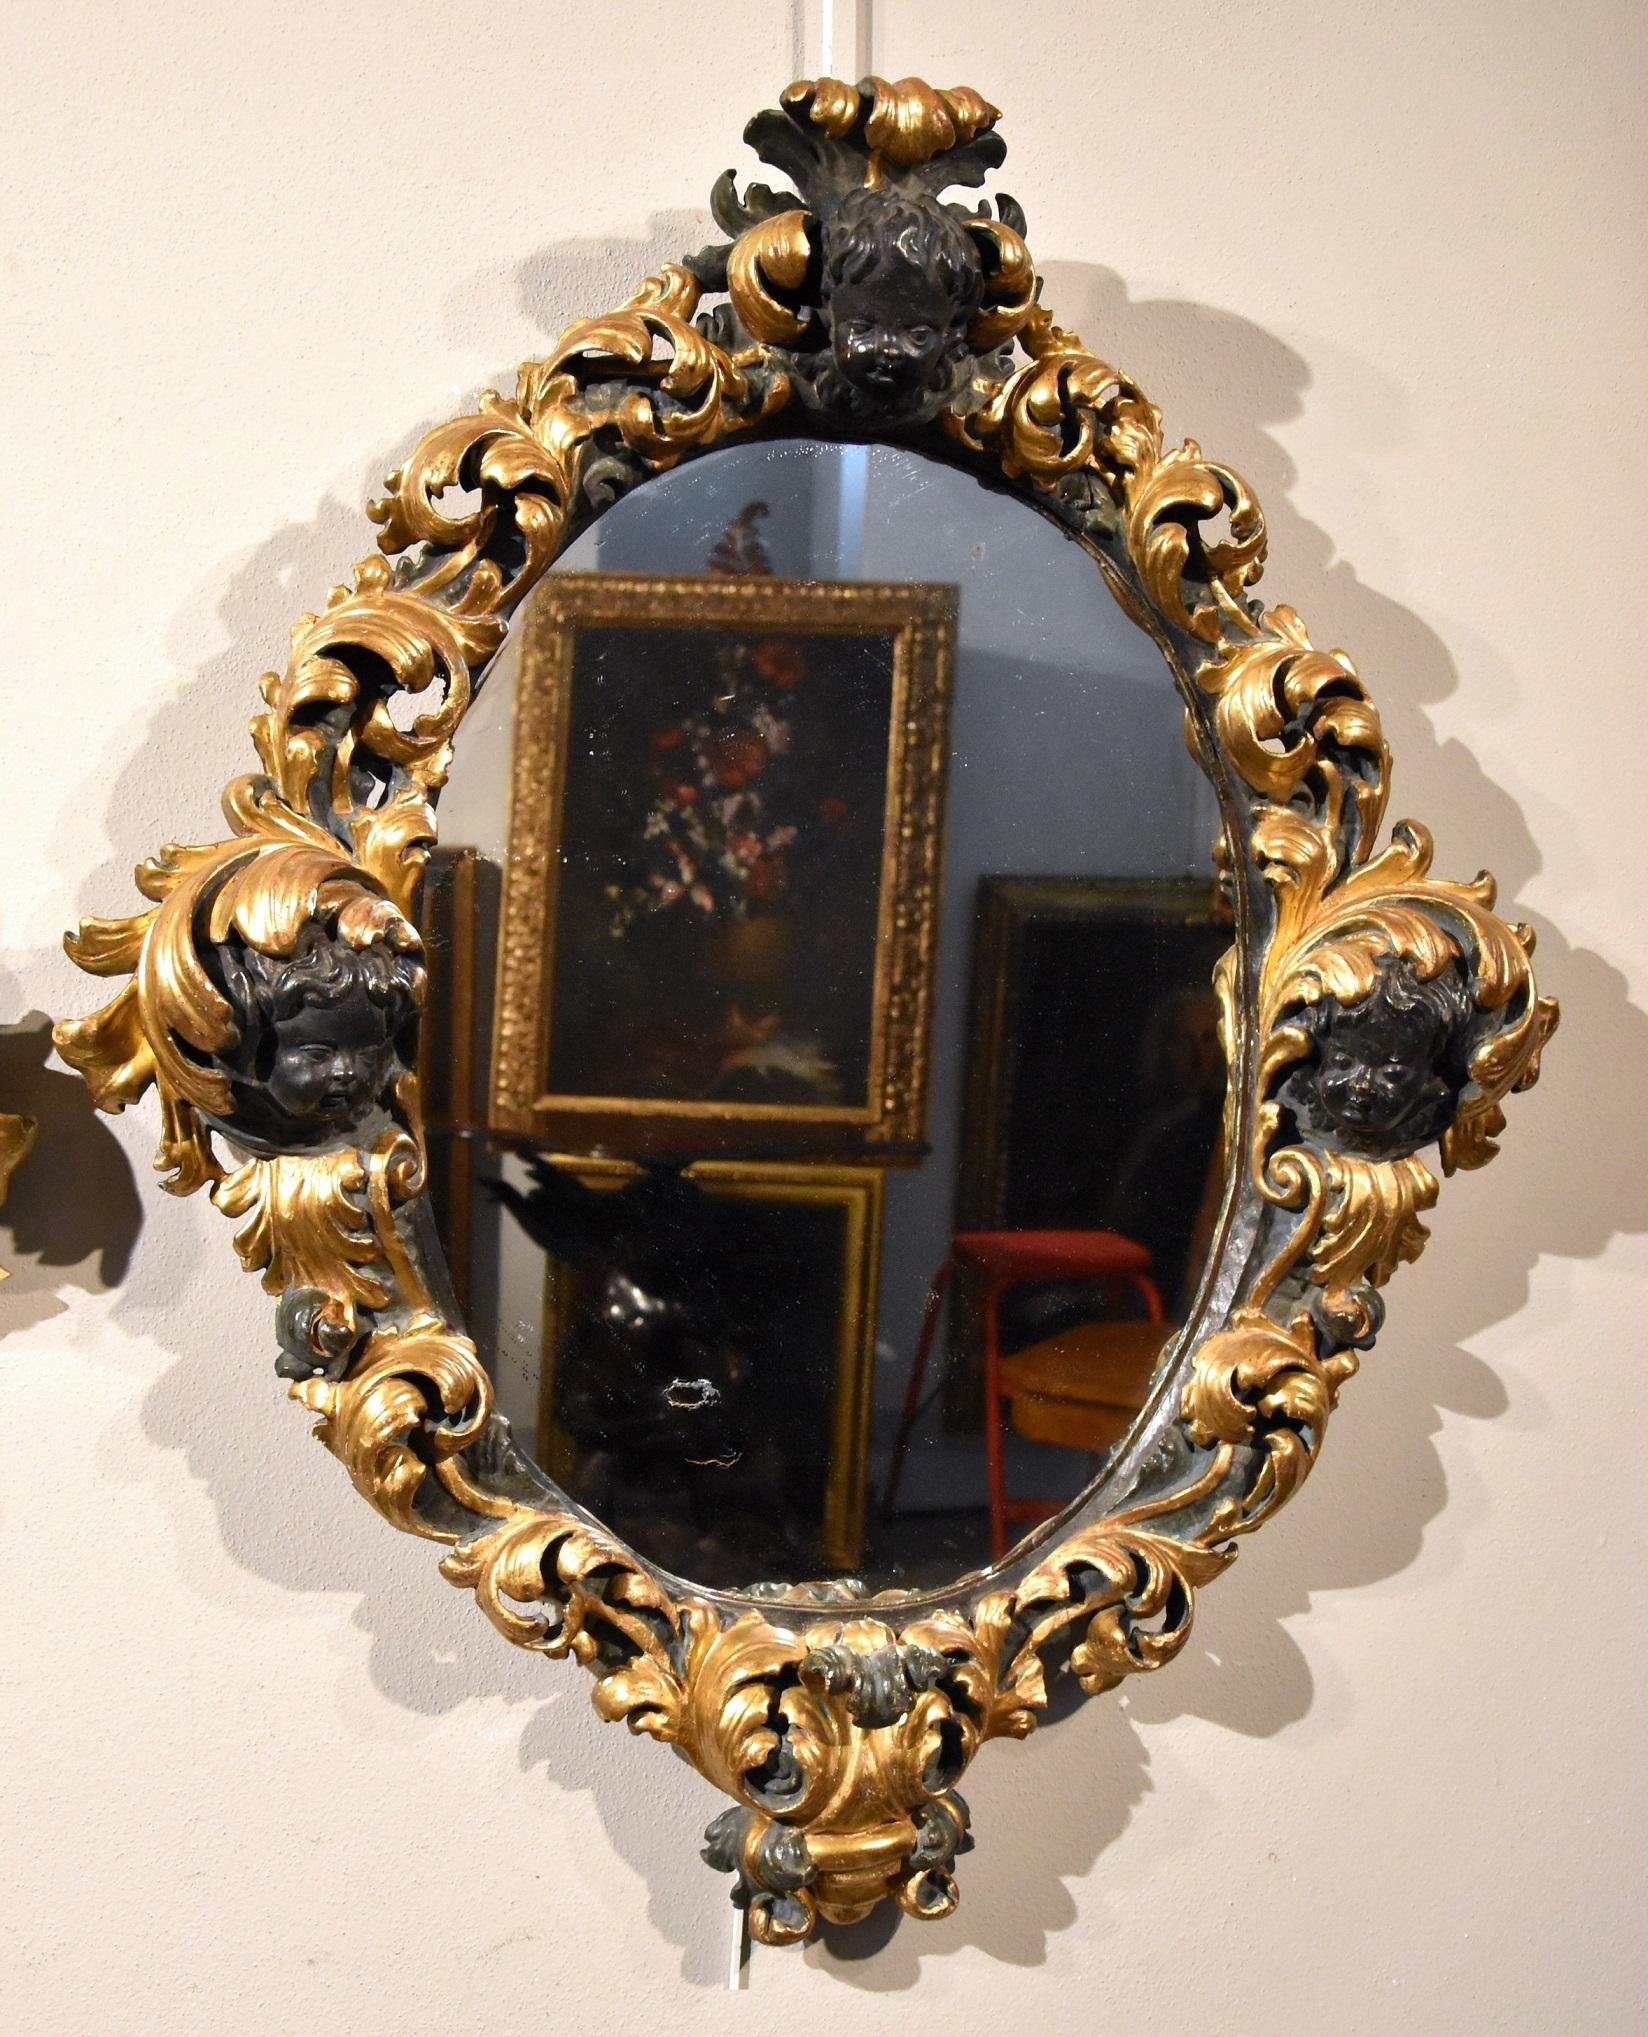 Paire de grands miroirs baroques de forme ovale (II / II)
Maître sculpteur romain du XVIIe siècle

Bois sculpté, laqué et doré
Miroir ancien en verre argenté au mercure

92 x 76 cm.
(au miroir 59 x 43 cm.)

Nous présentons cette paire de prestigieux